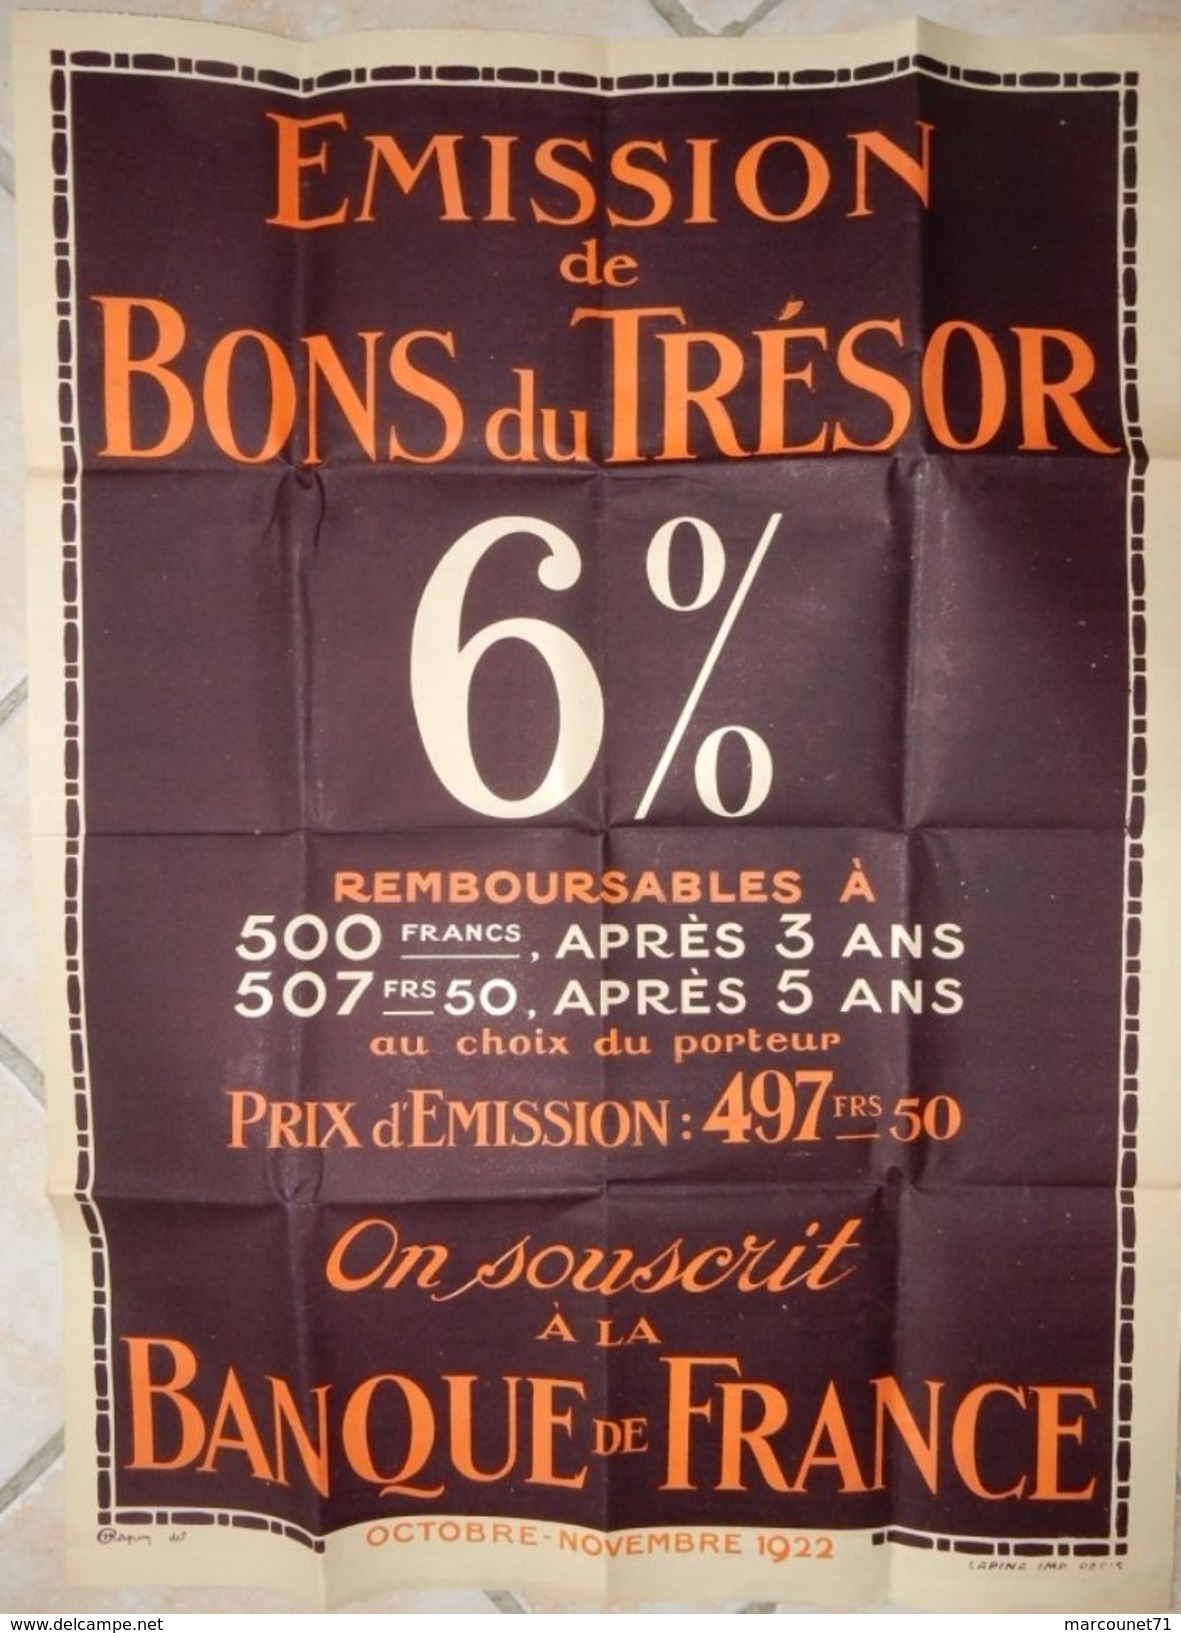 ANCIENNE AFFICHE EMISSION DE BONS DU TRESOR BANQUE DE FRANCE 1922 - Posters